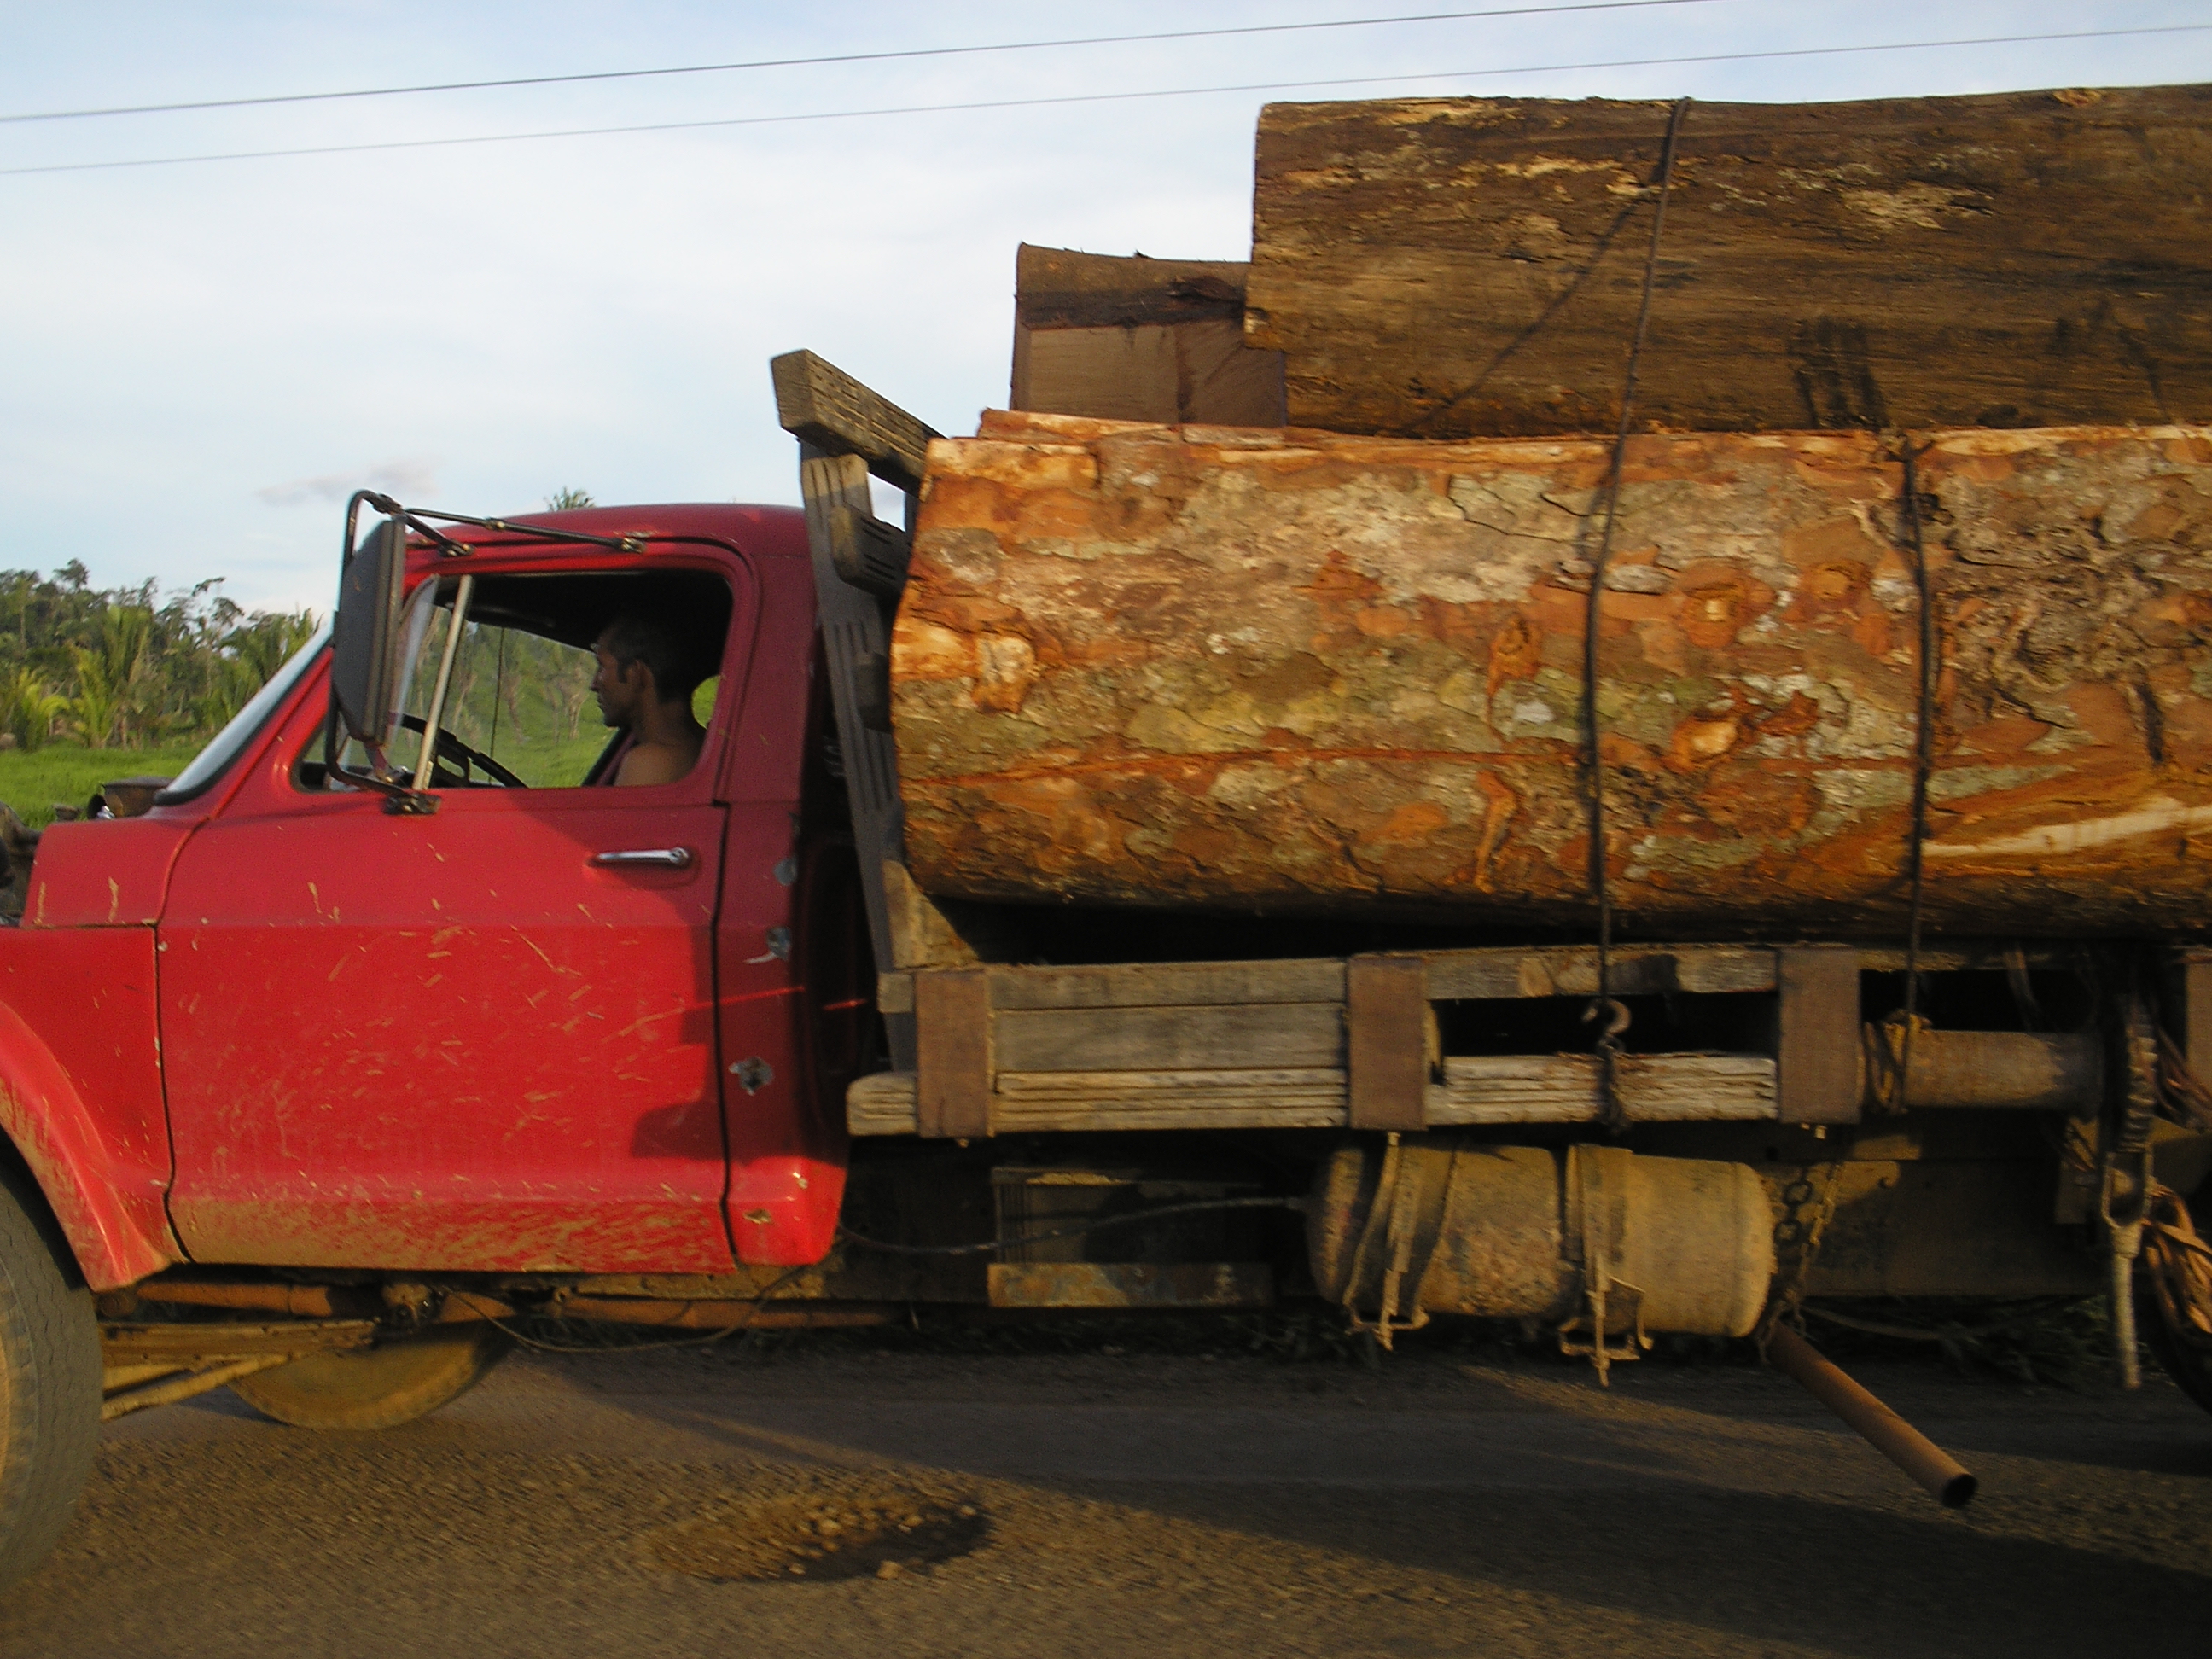 Flagrante de transporte ilegal de madeira no estado de Rondônia.